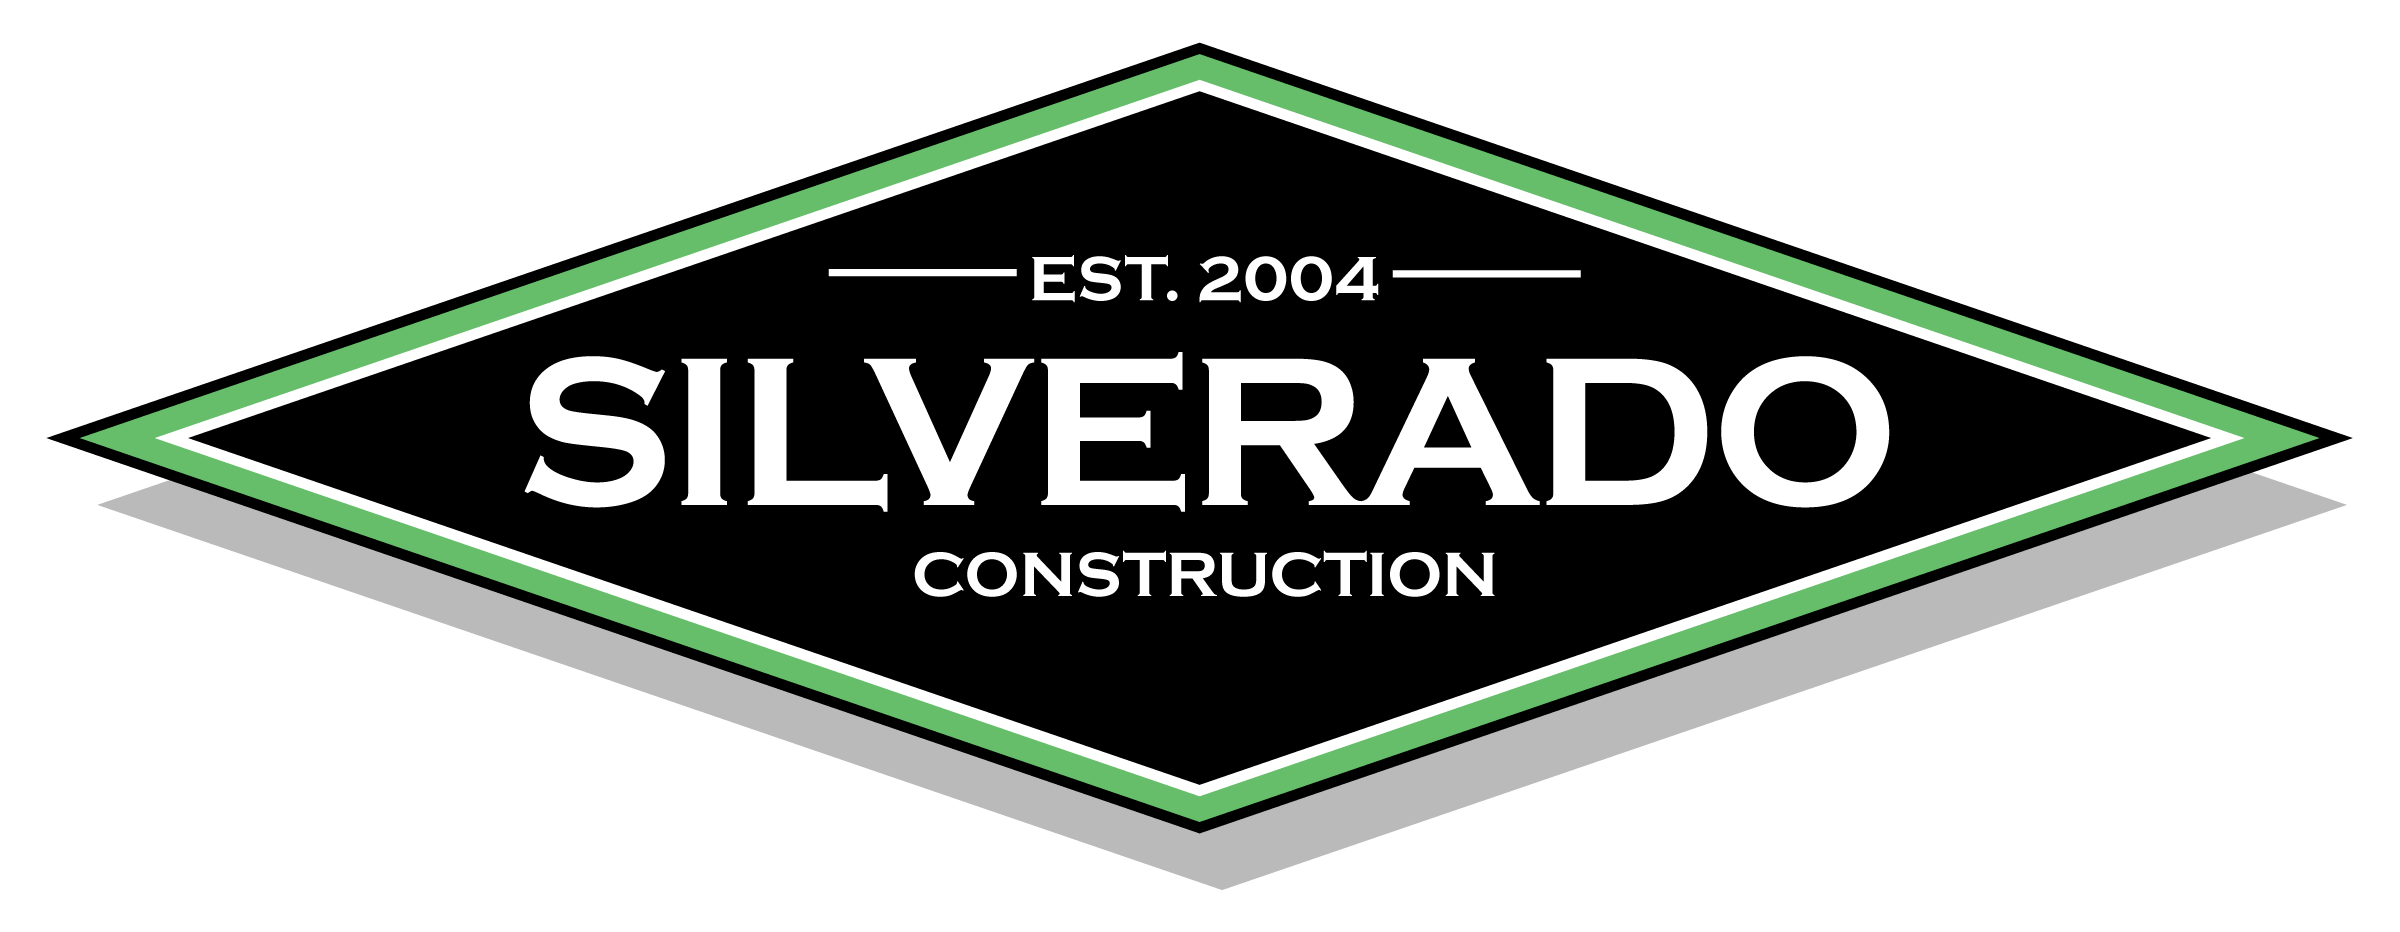 Silverado Construction Logo